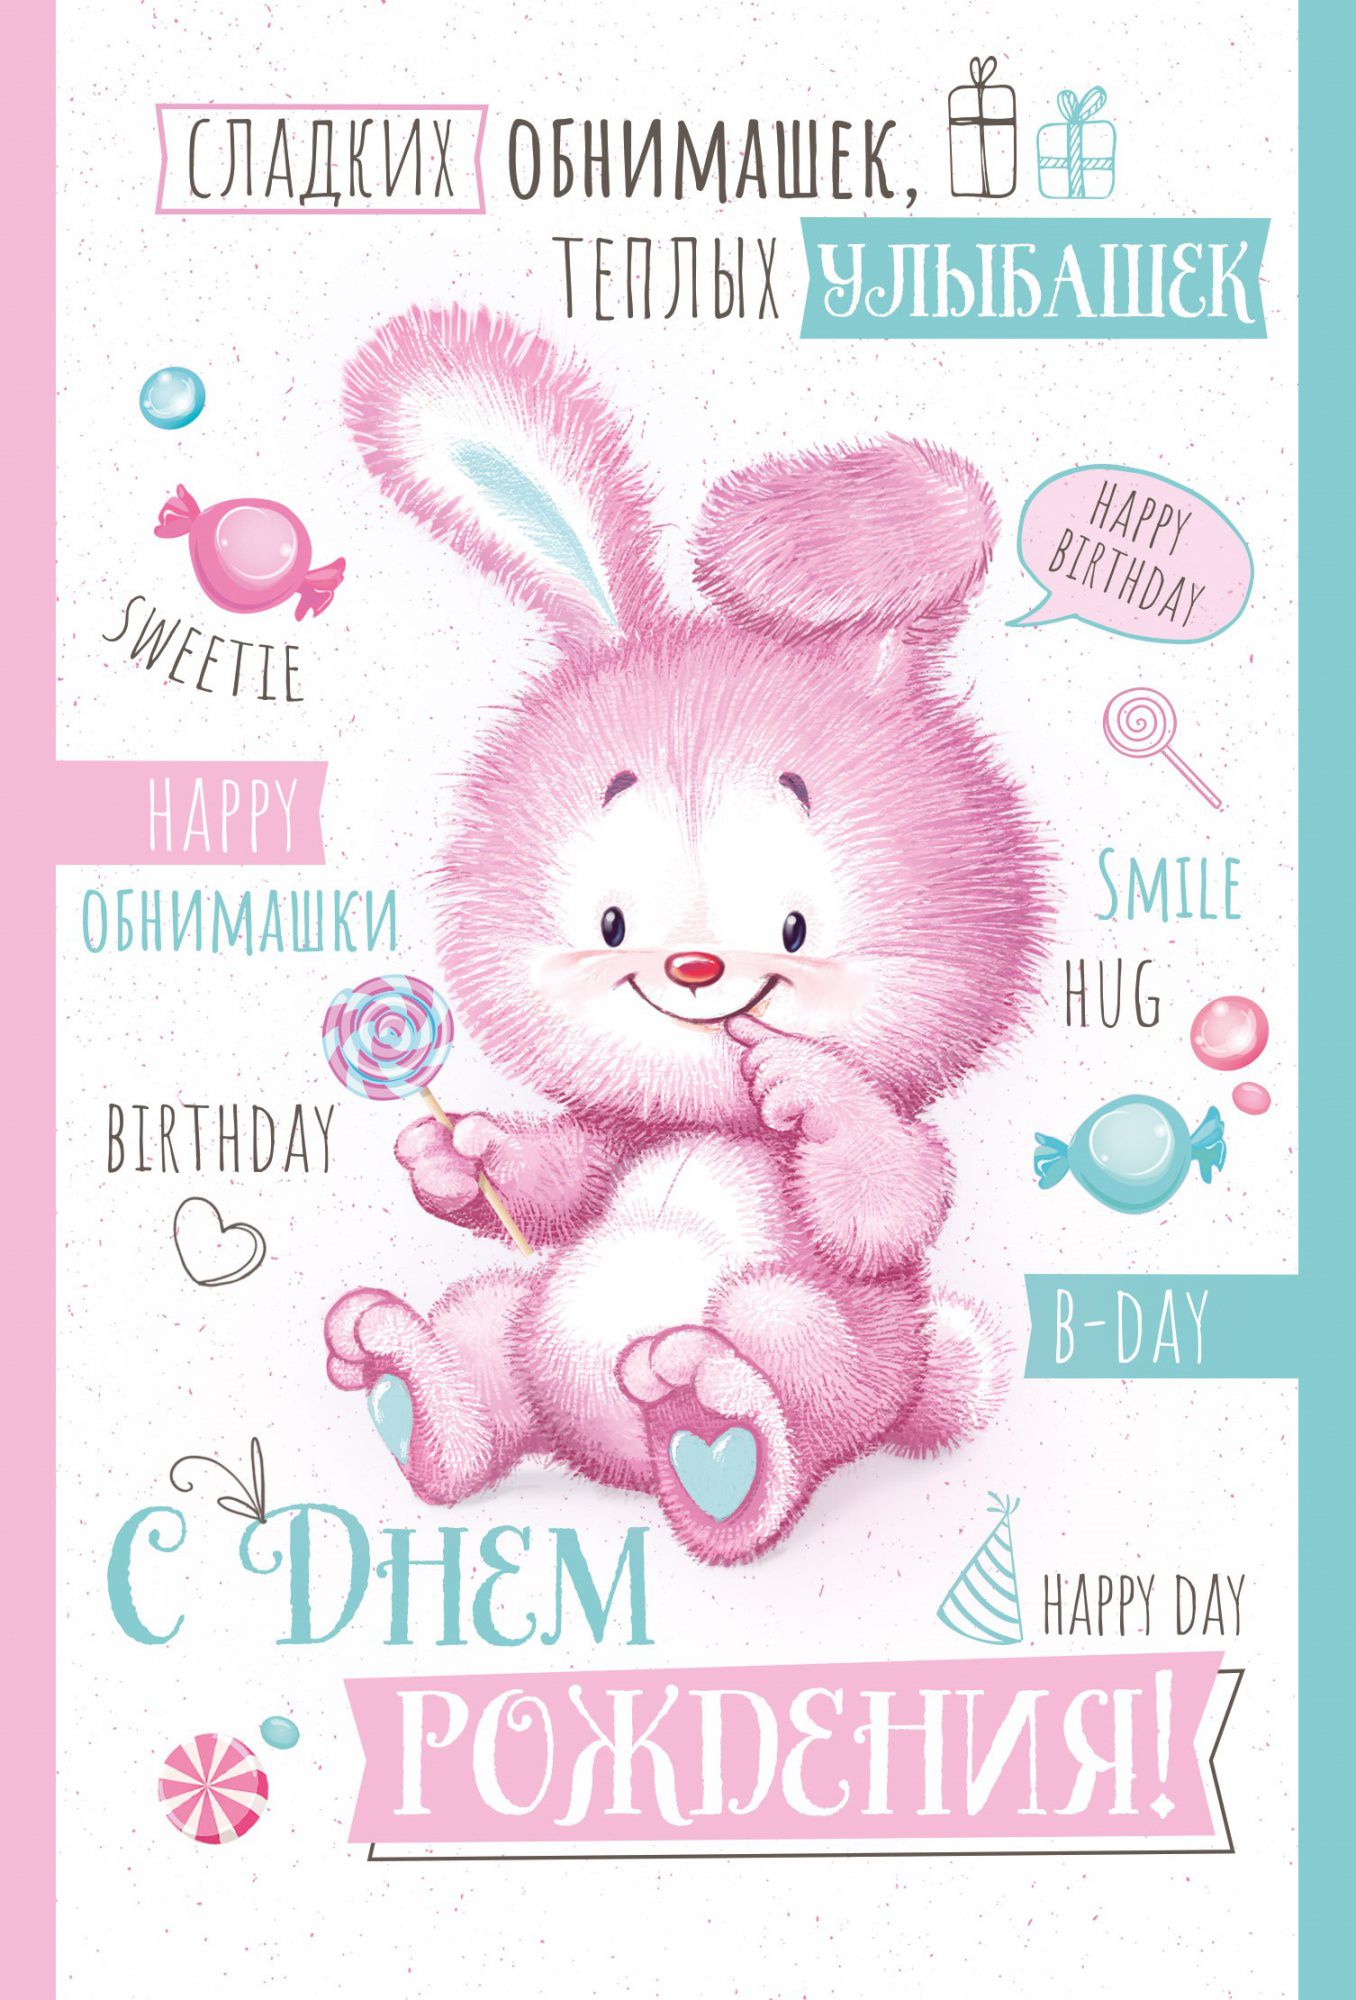 Поздравление зайца с днем рождения. День рождения зайчика. С днём рождения Зайка. Открытка с днём рождения Зайка. С днем рождения зацчикз.